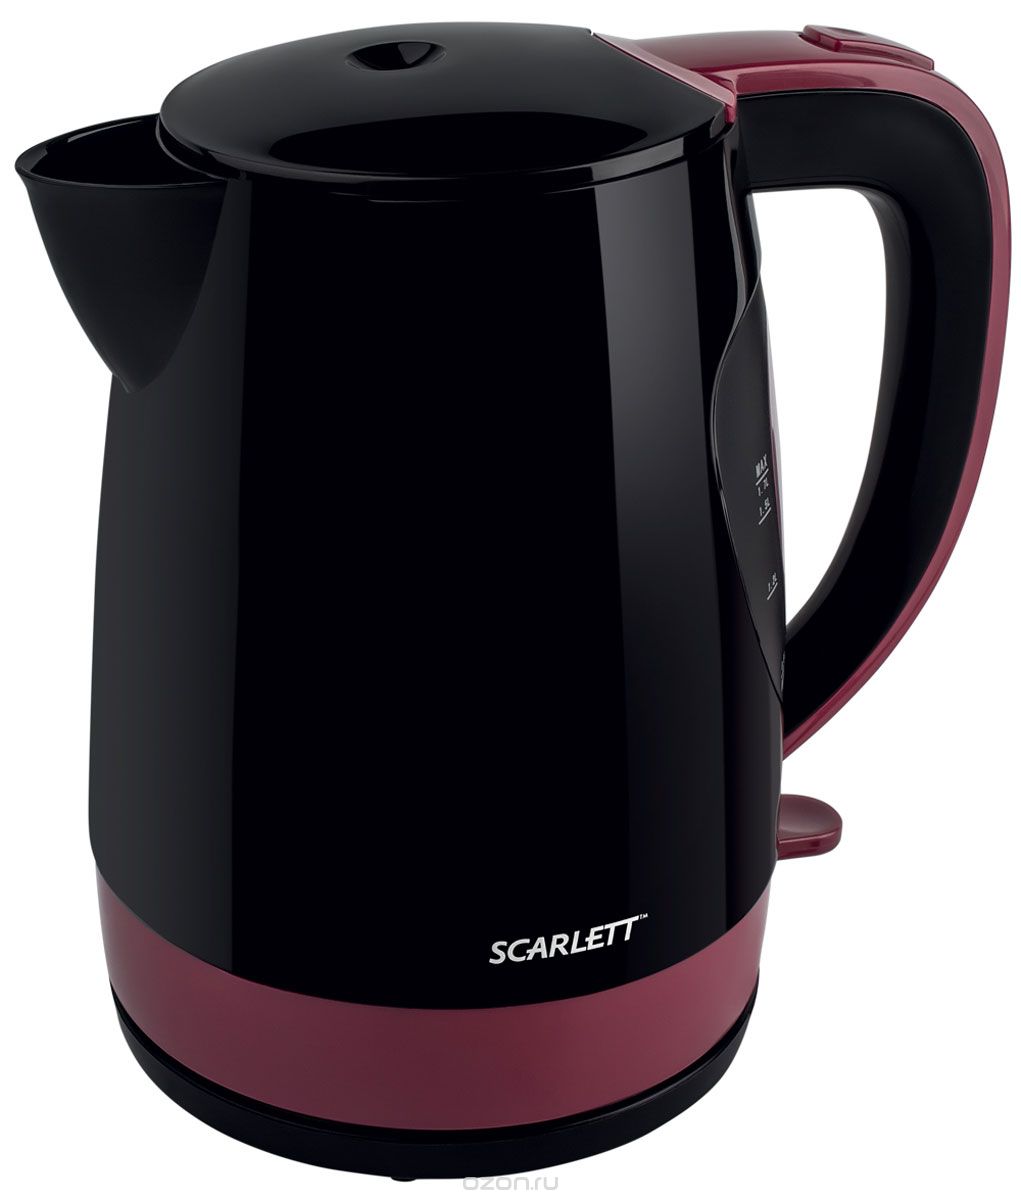   Scarlett SC-EK18P26, Black Burgundy